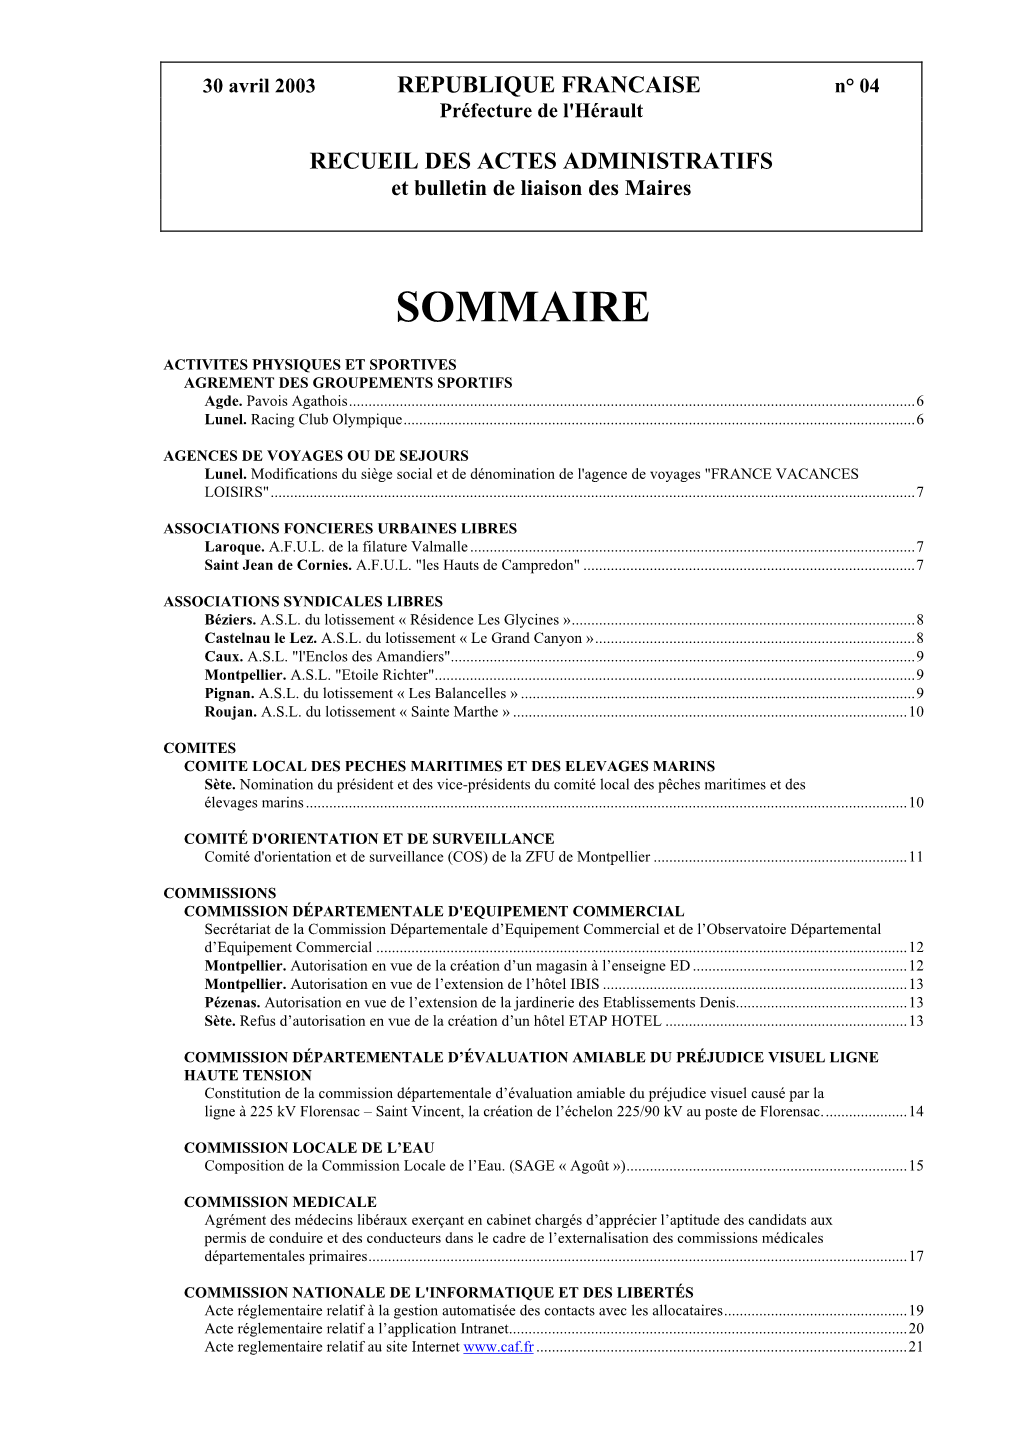 30 Avril 2003 REPUBLIQUE FRANCAISE N° 04 Préfecture De L'hérault